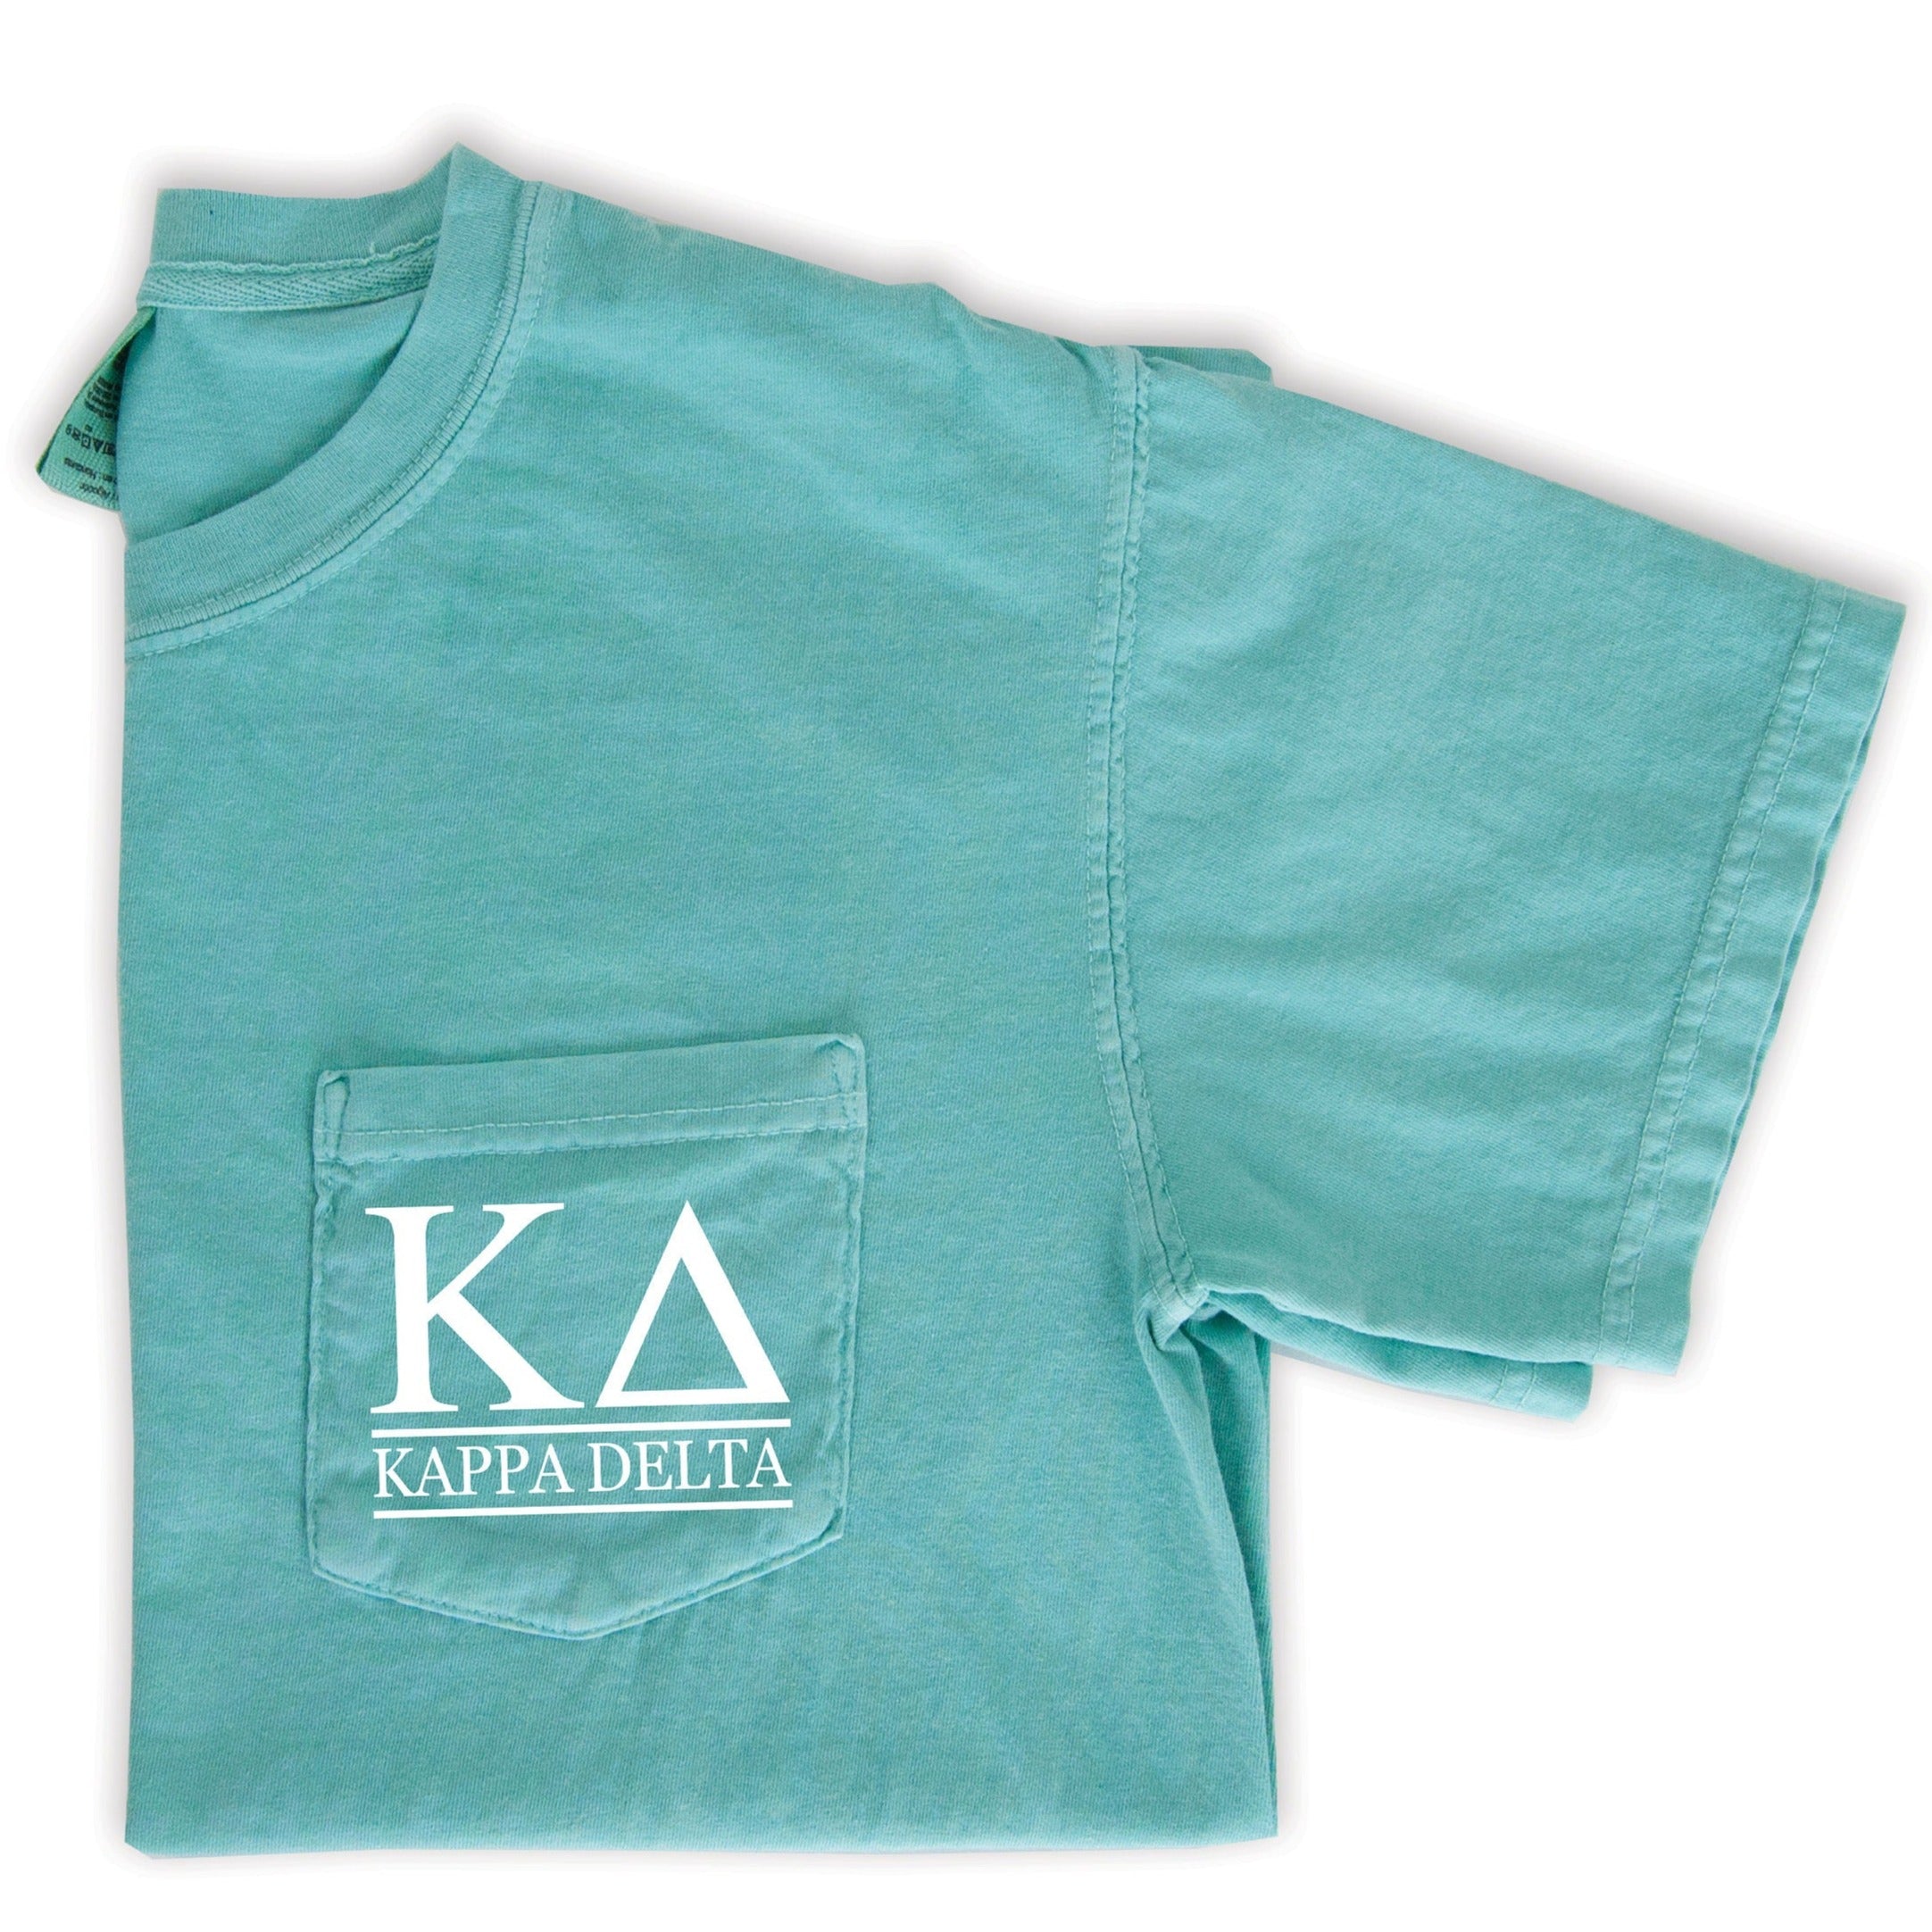 Kappa Delta Block Letters T-Shirt - Mint - Go Greek Chic